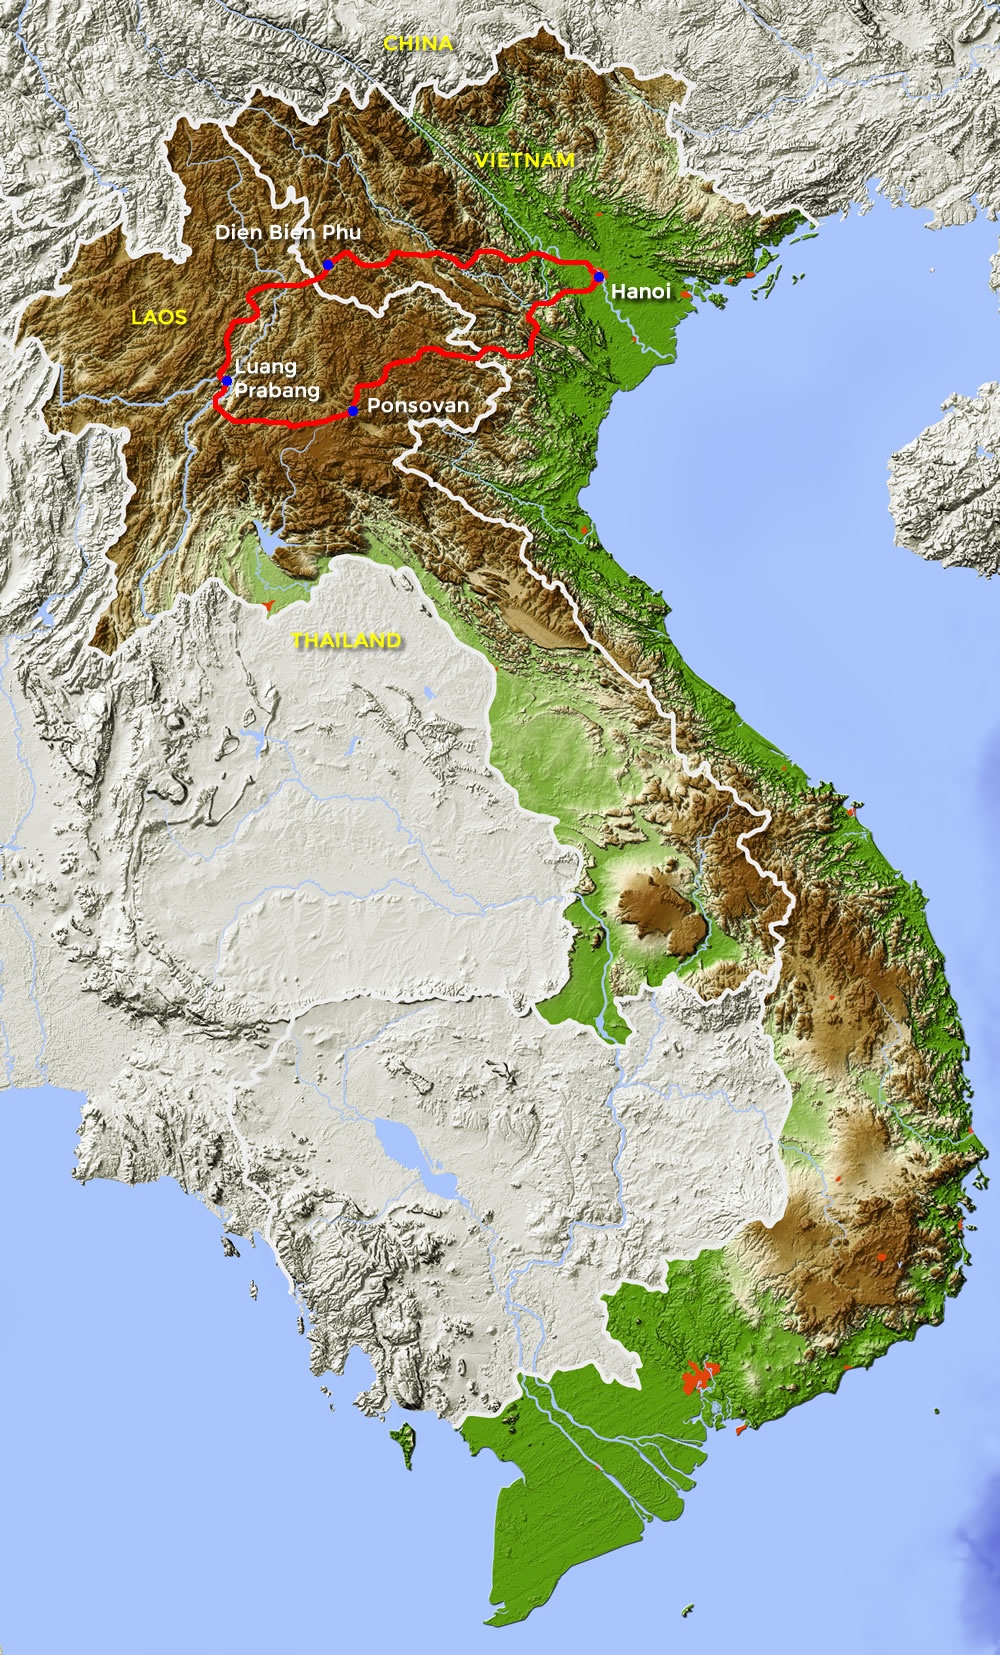 tourhub | Motor Trails | 14 Days Vietnam Laos Adventure Motorcycle Tour | Tour Map